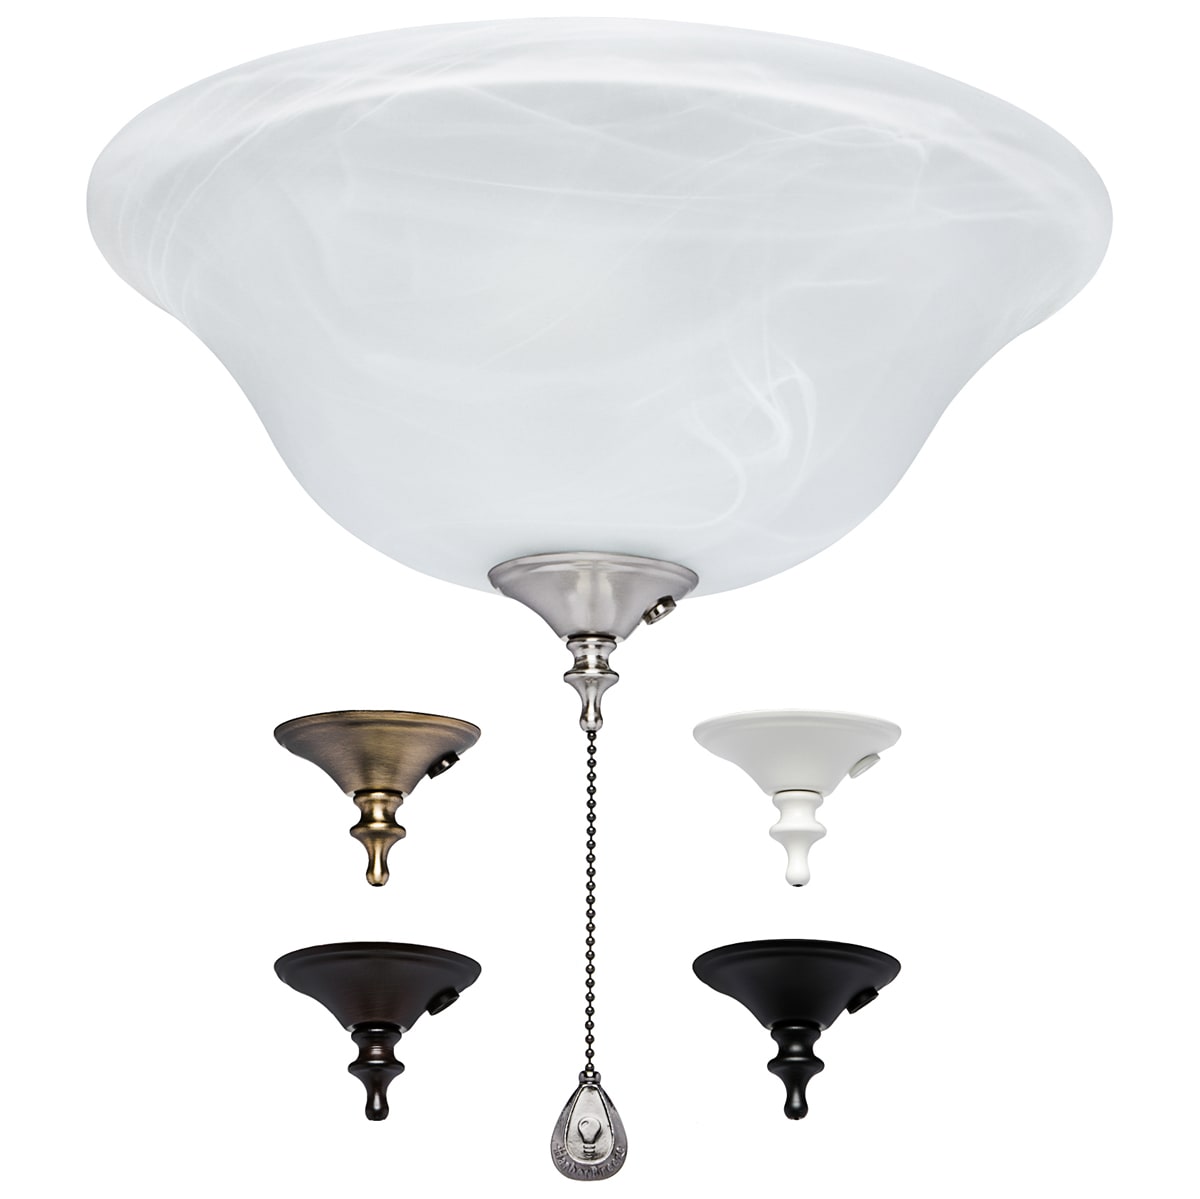 Led Ceiling Fan Light Kit